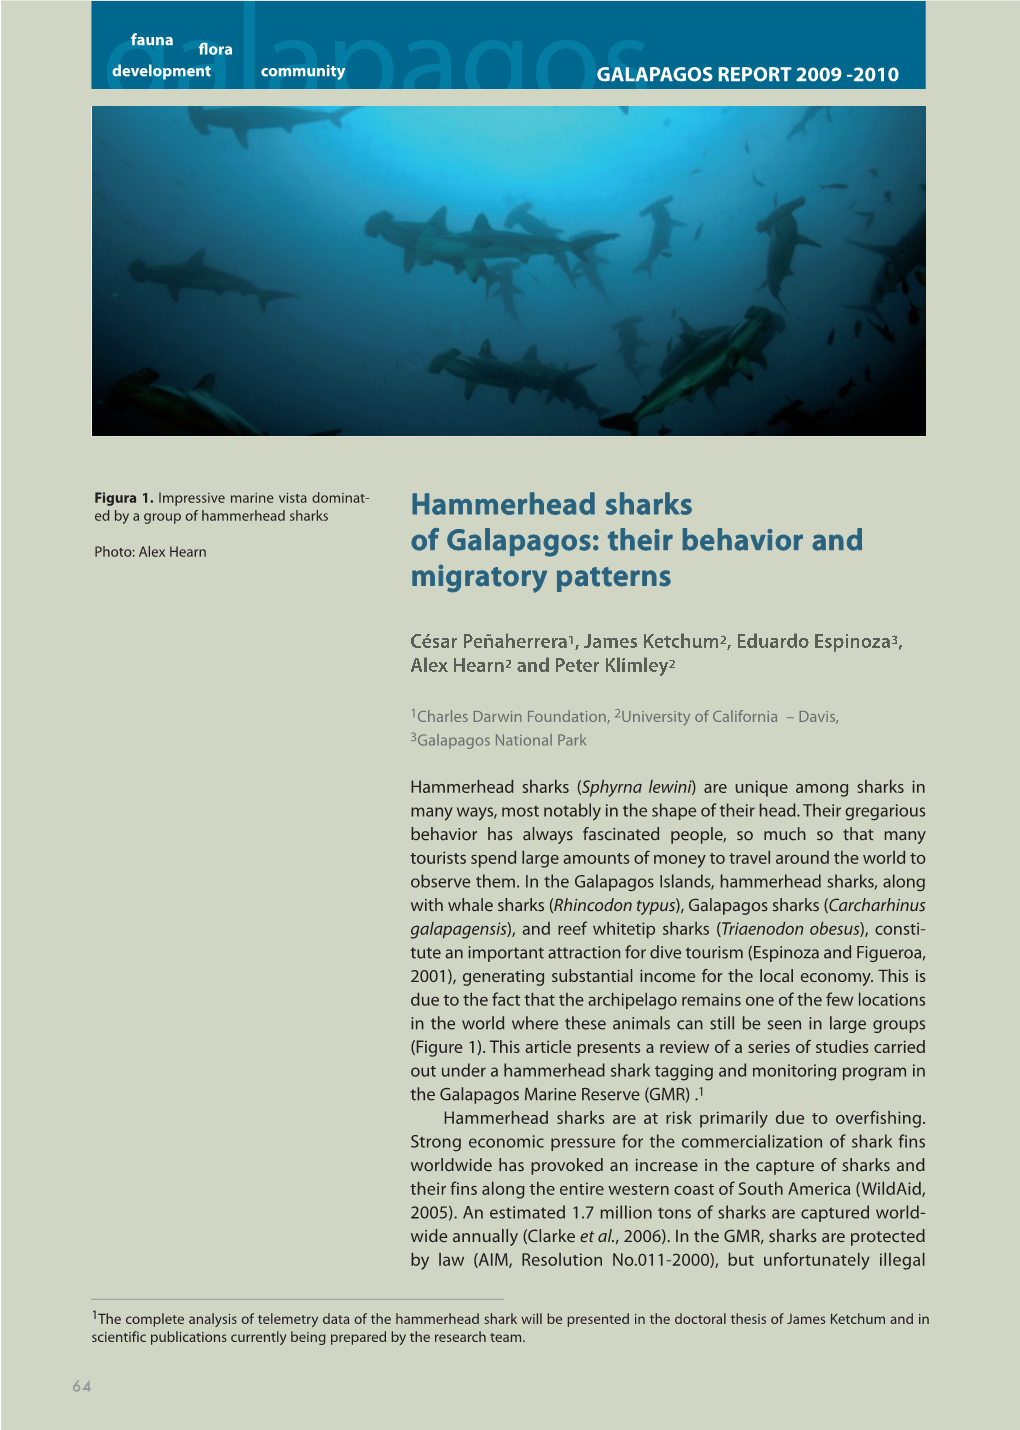 Hammerhead Sharks of Galapagos